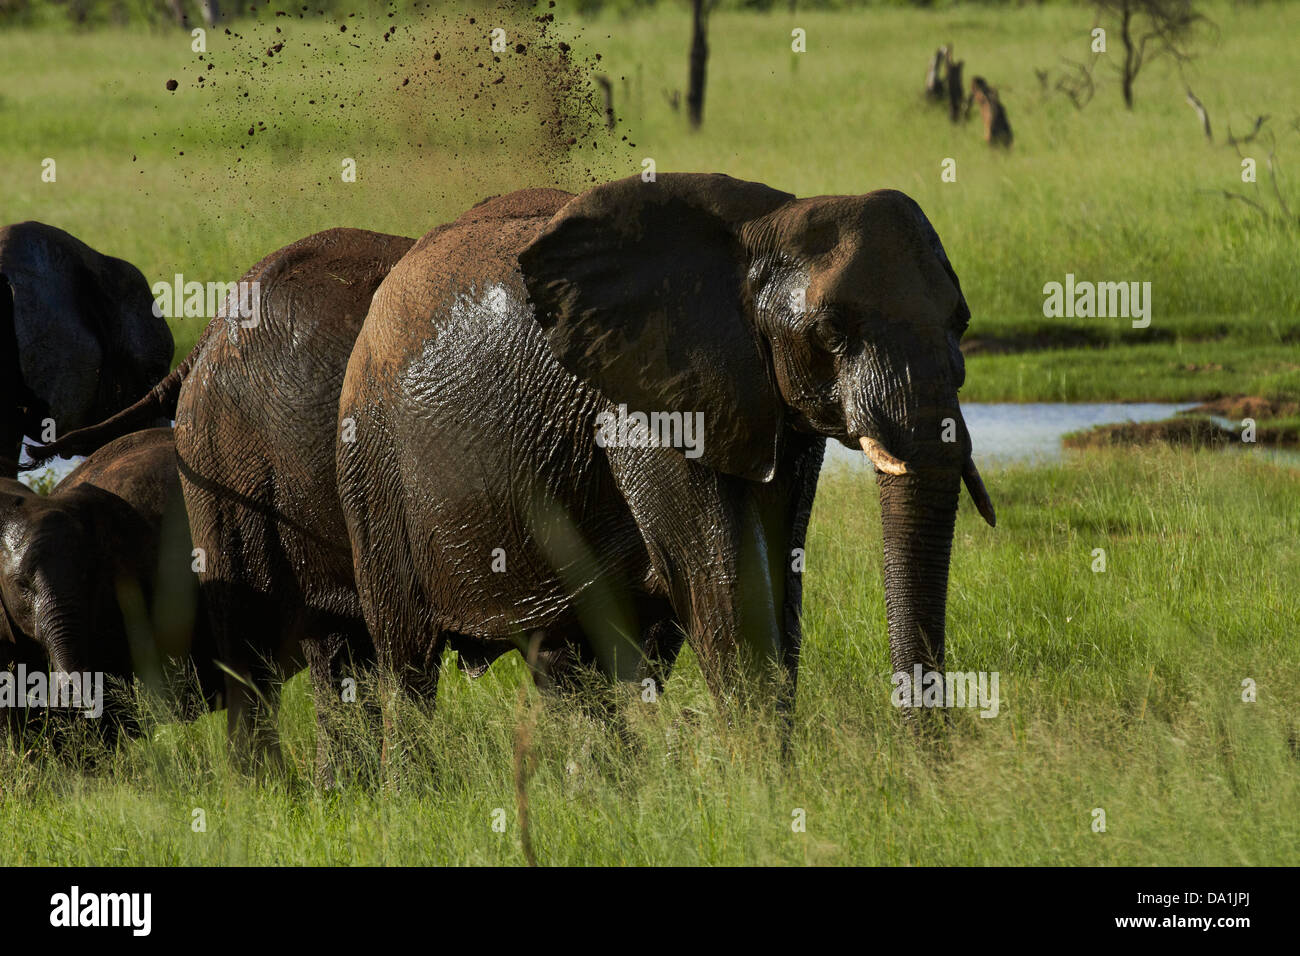 Elephant (Loxodonta africana) having mud bath, Hwange National Park, Zimbabwe, Southern Africa Stock Photo